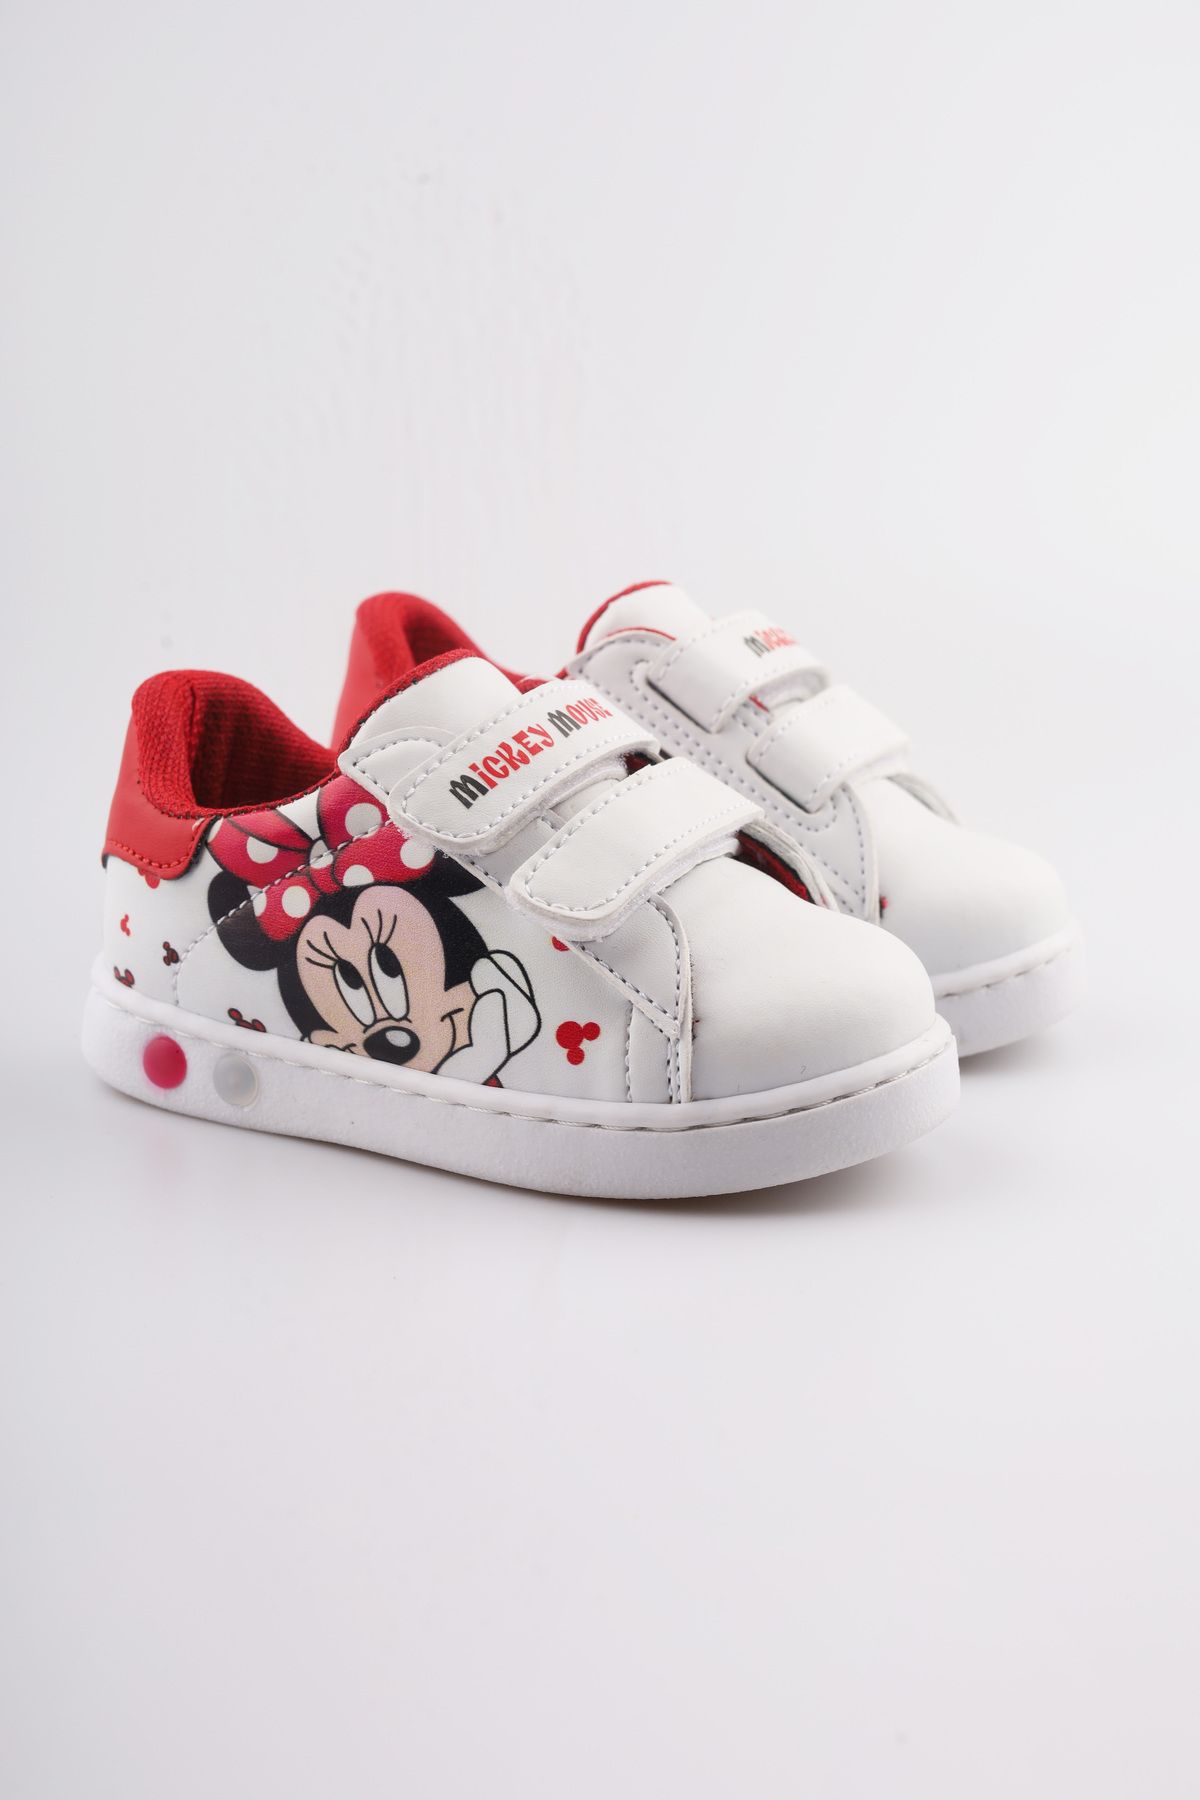 MoonGlow ilk Adım Ayakkabısı Kız Bebek ilk Adım Ayakkabısı Ortopedik ilk Adım Ayakkabısı Işıklı Mickey Mouse